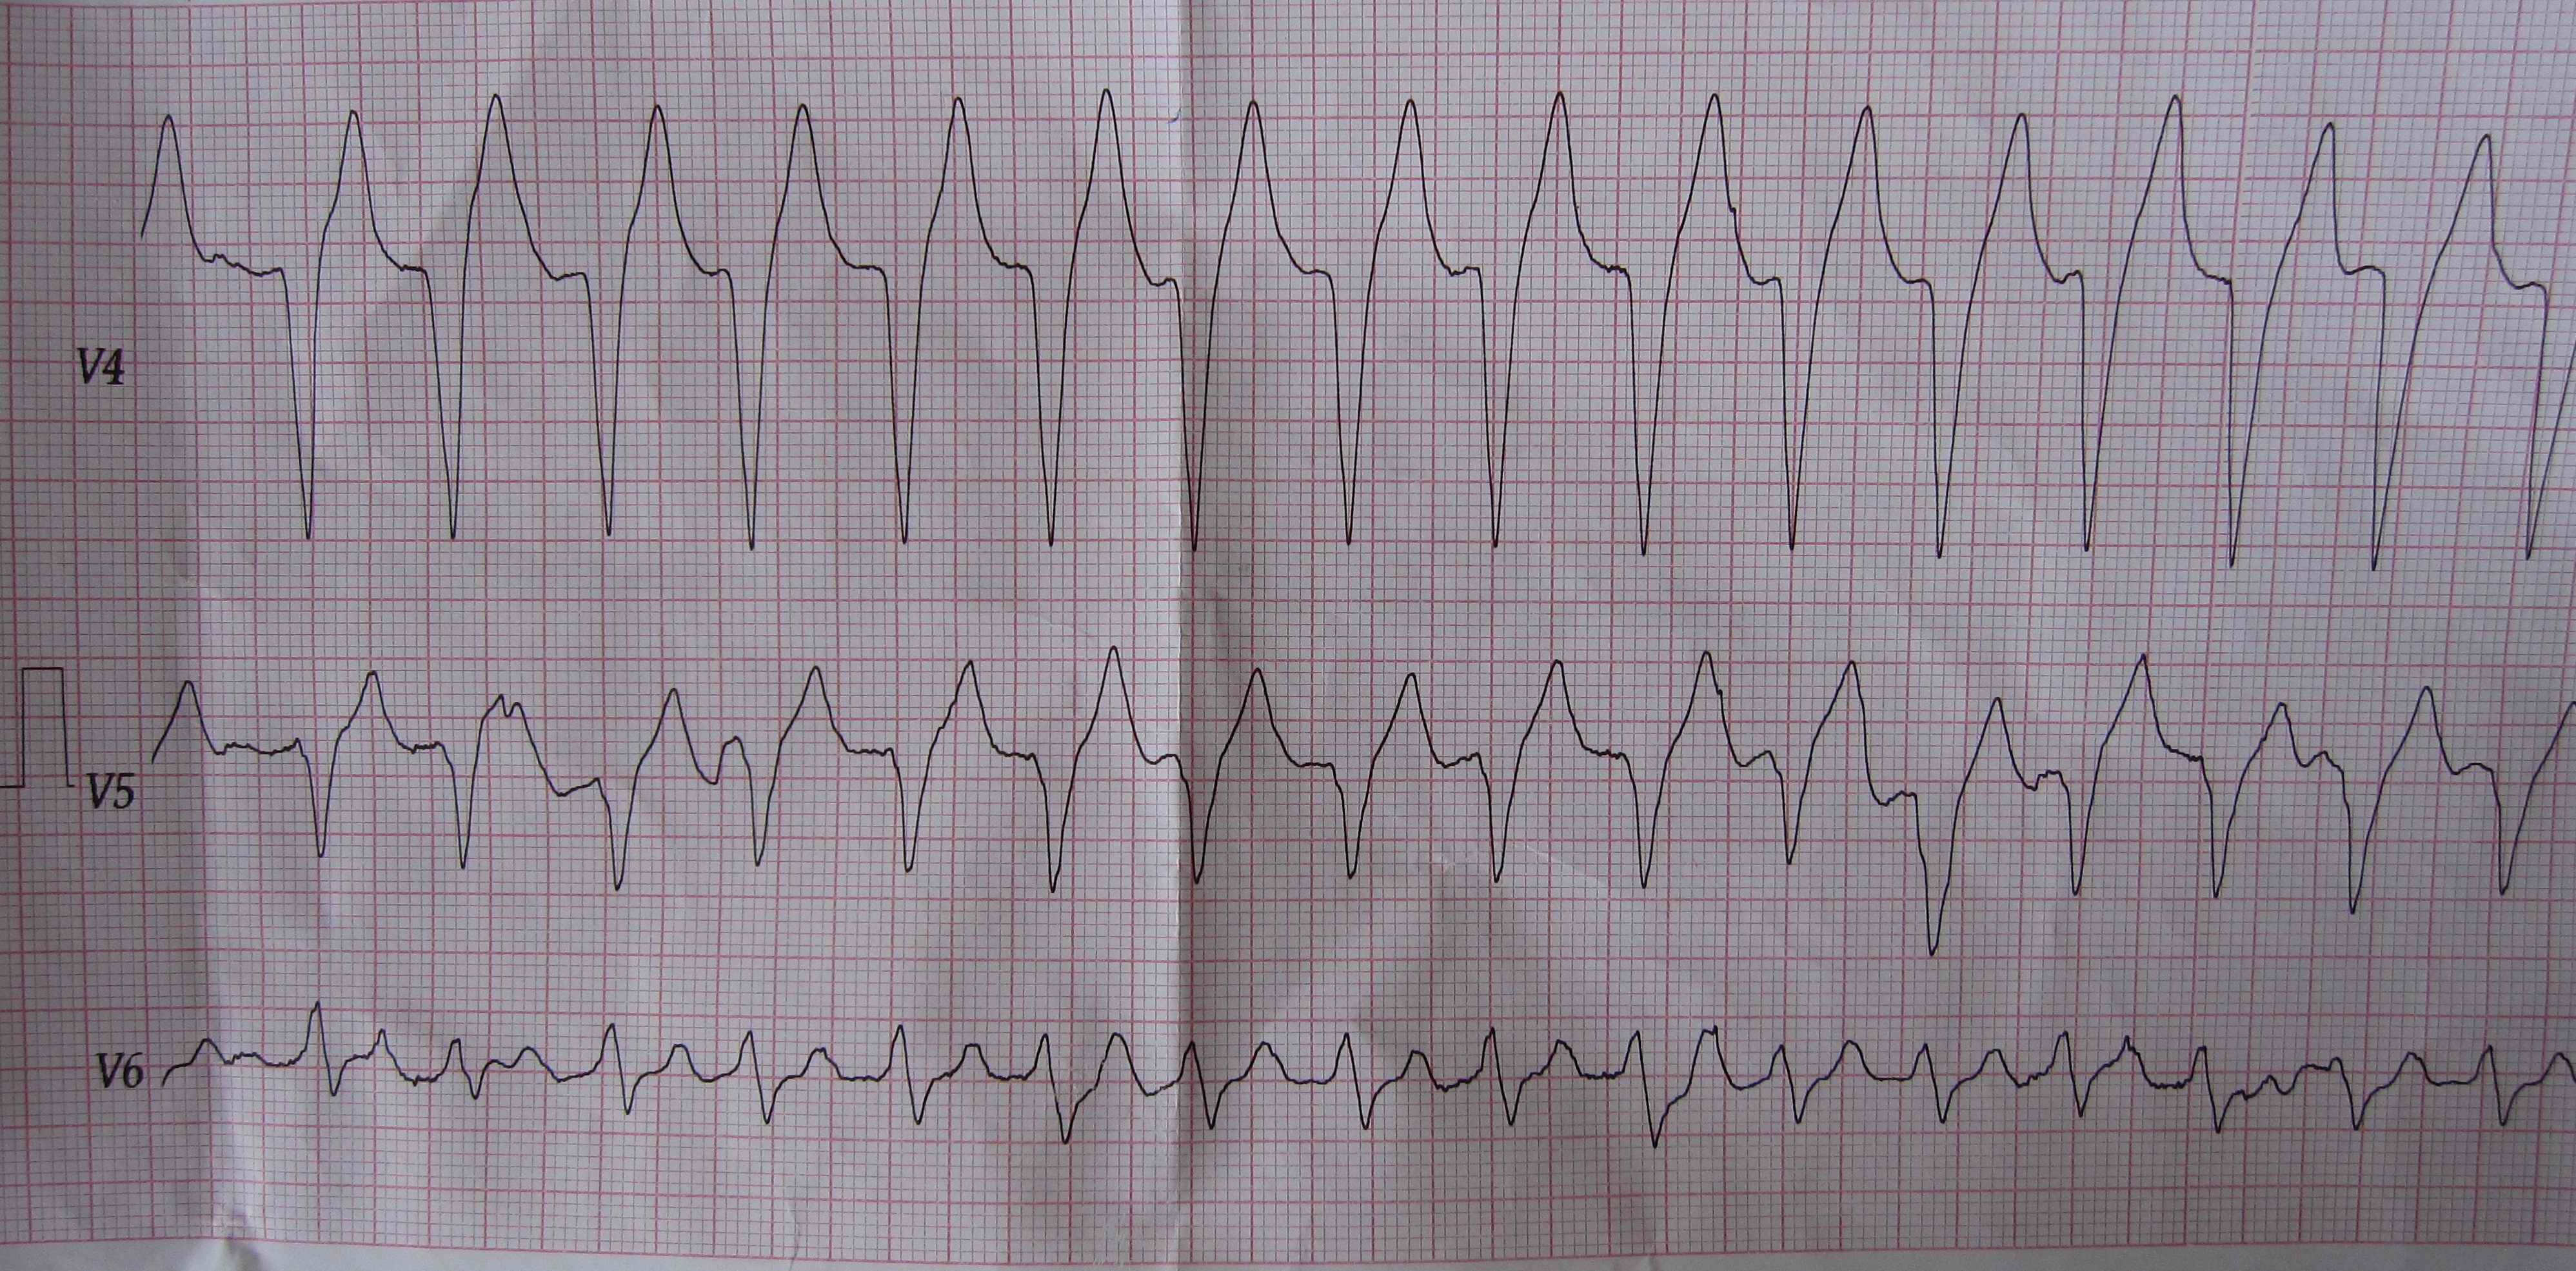 肺源性心脏病人的心电图,病人已抢救无效